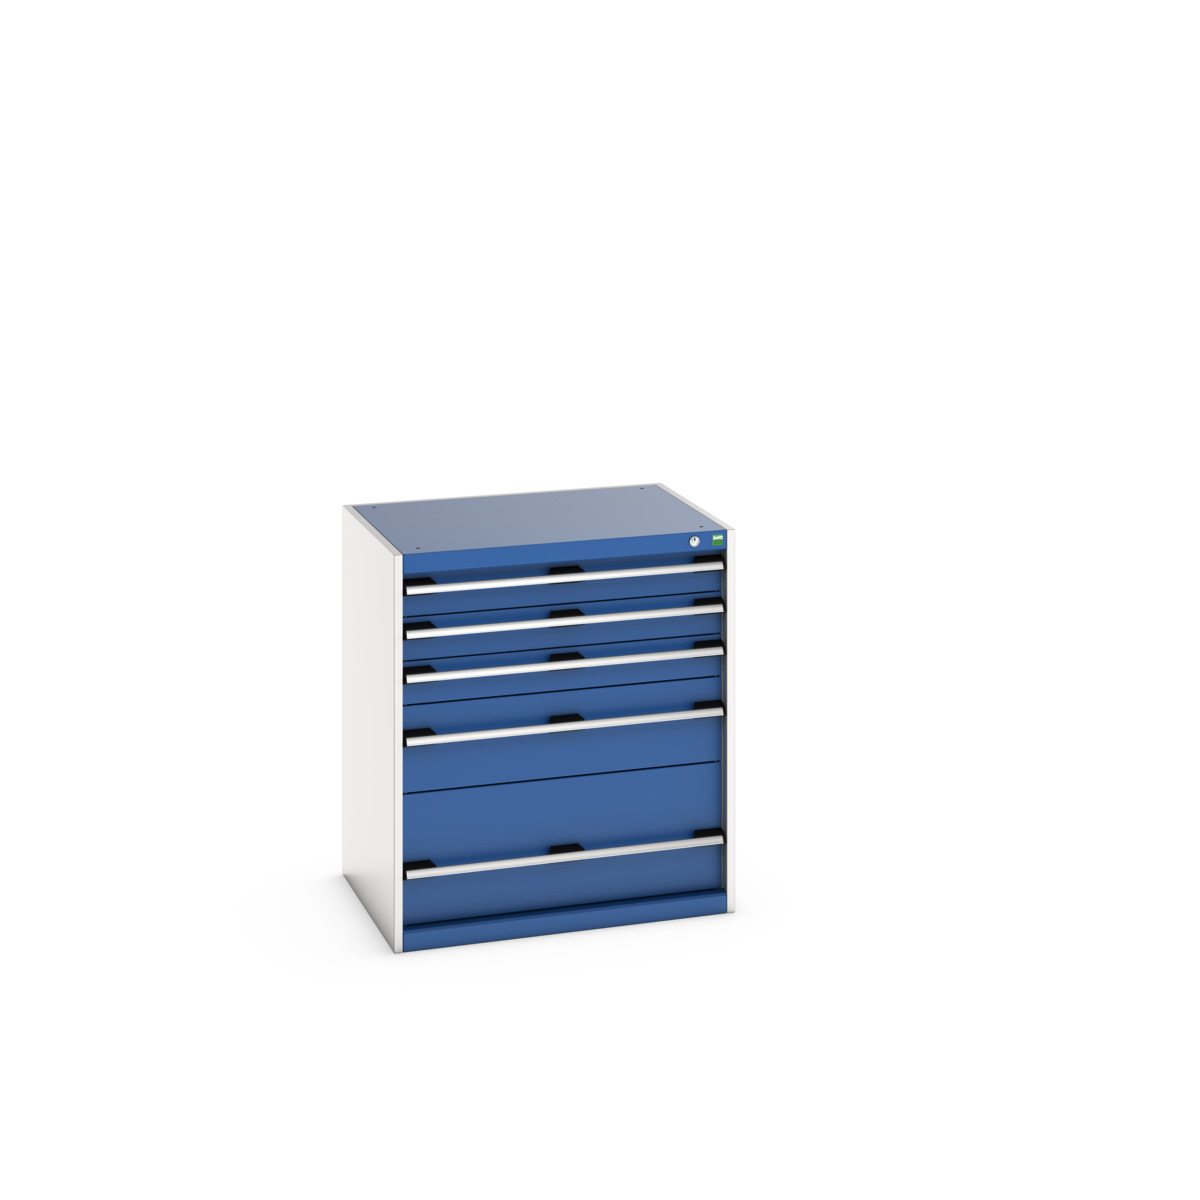 40020035.11V - cubio drawer cabinet